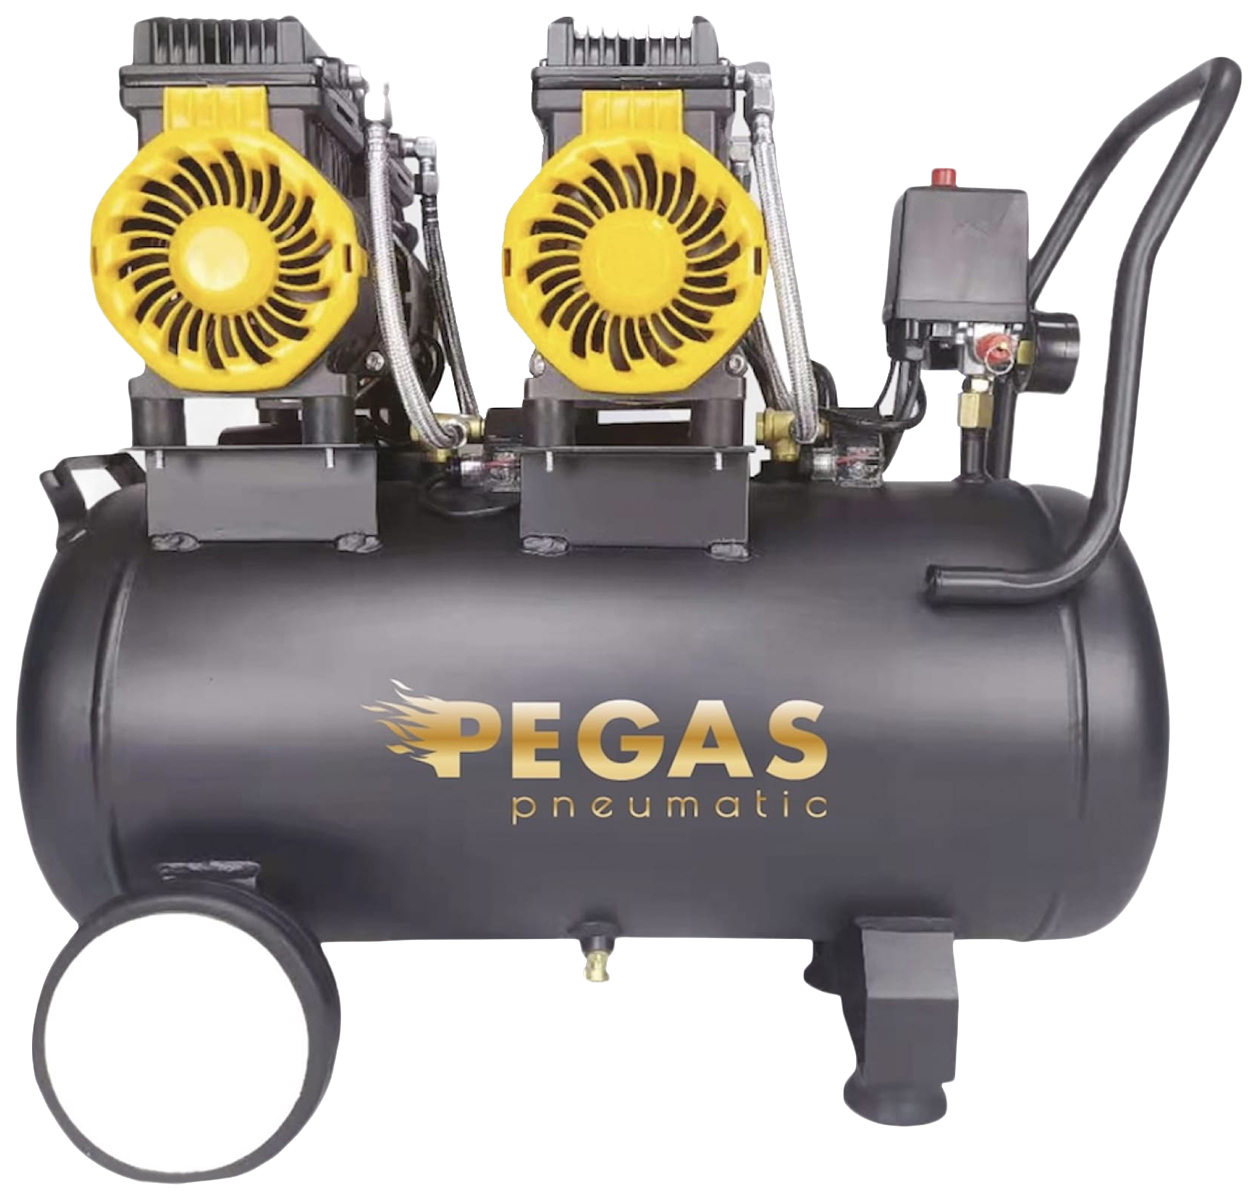 Pegas pneumatic Бесшумный компрессор PG-2800*2 проф. серия безмасляный 2.8кВт, 365 л/мин,5